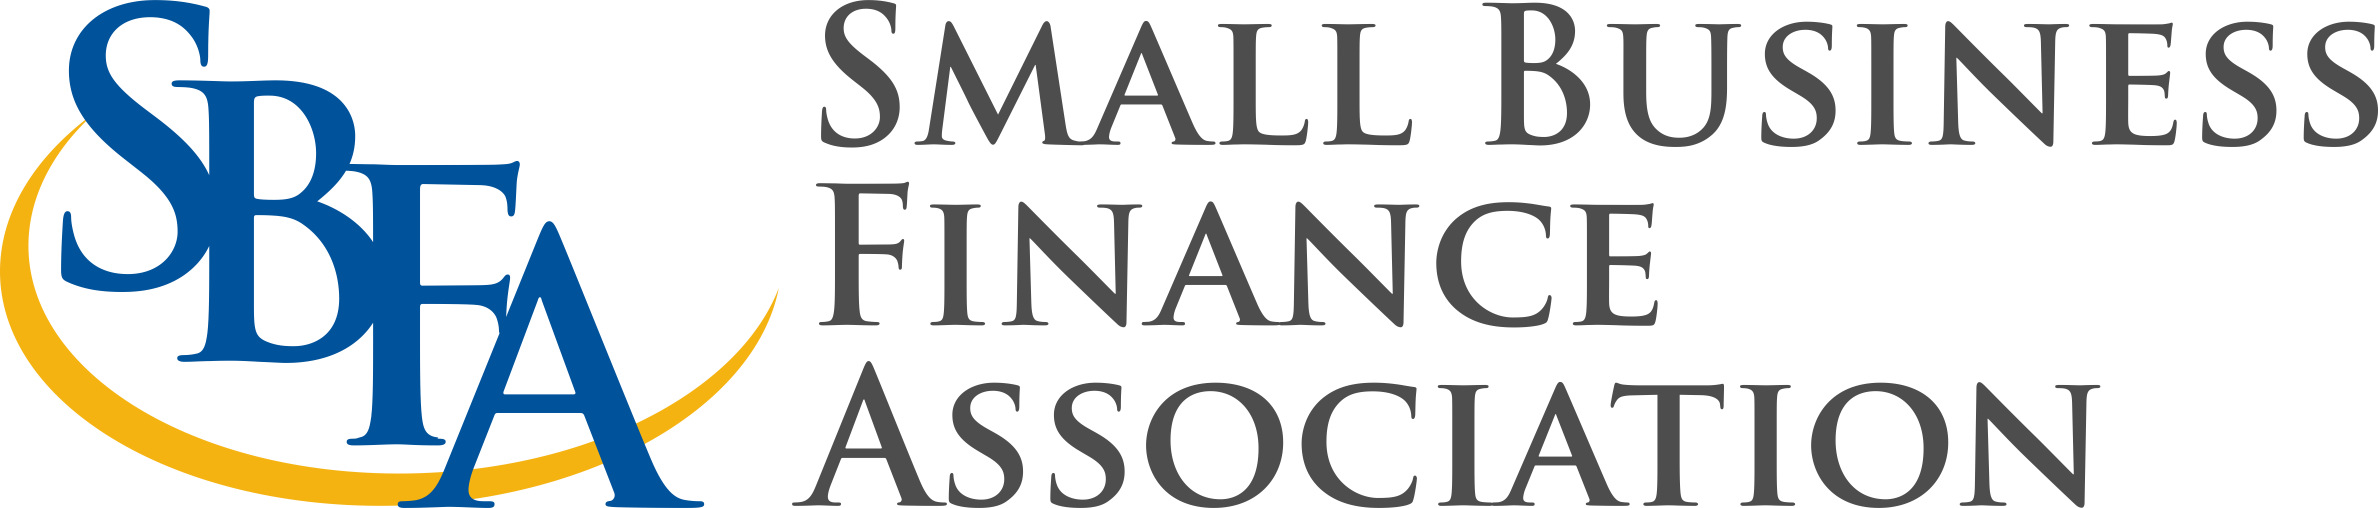 Small Business Finance Association Logo